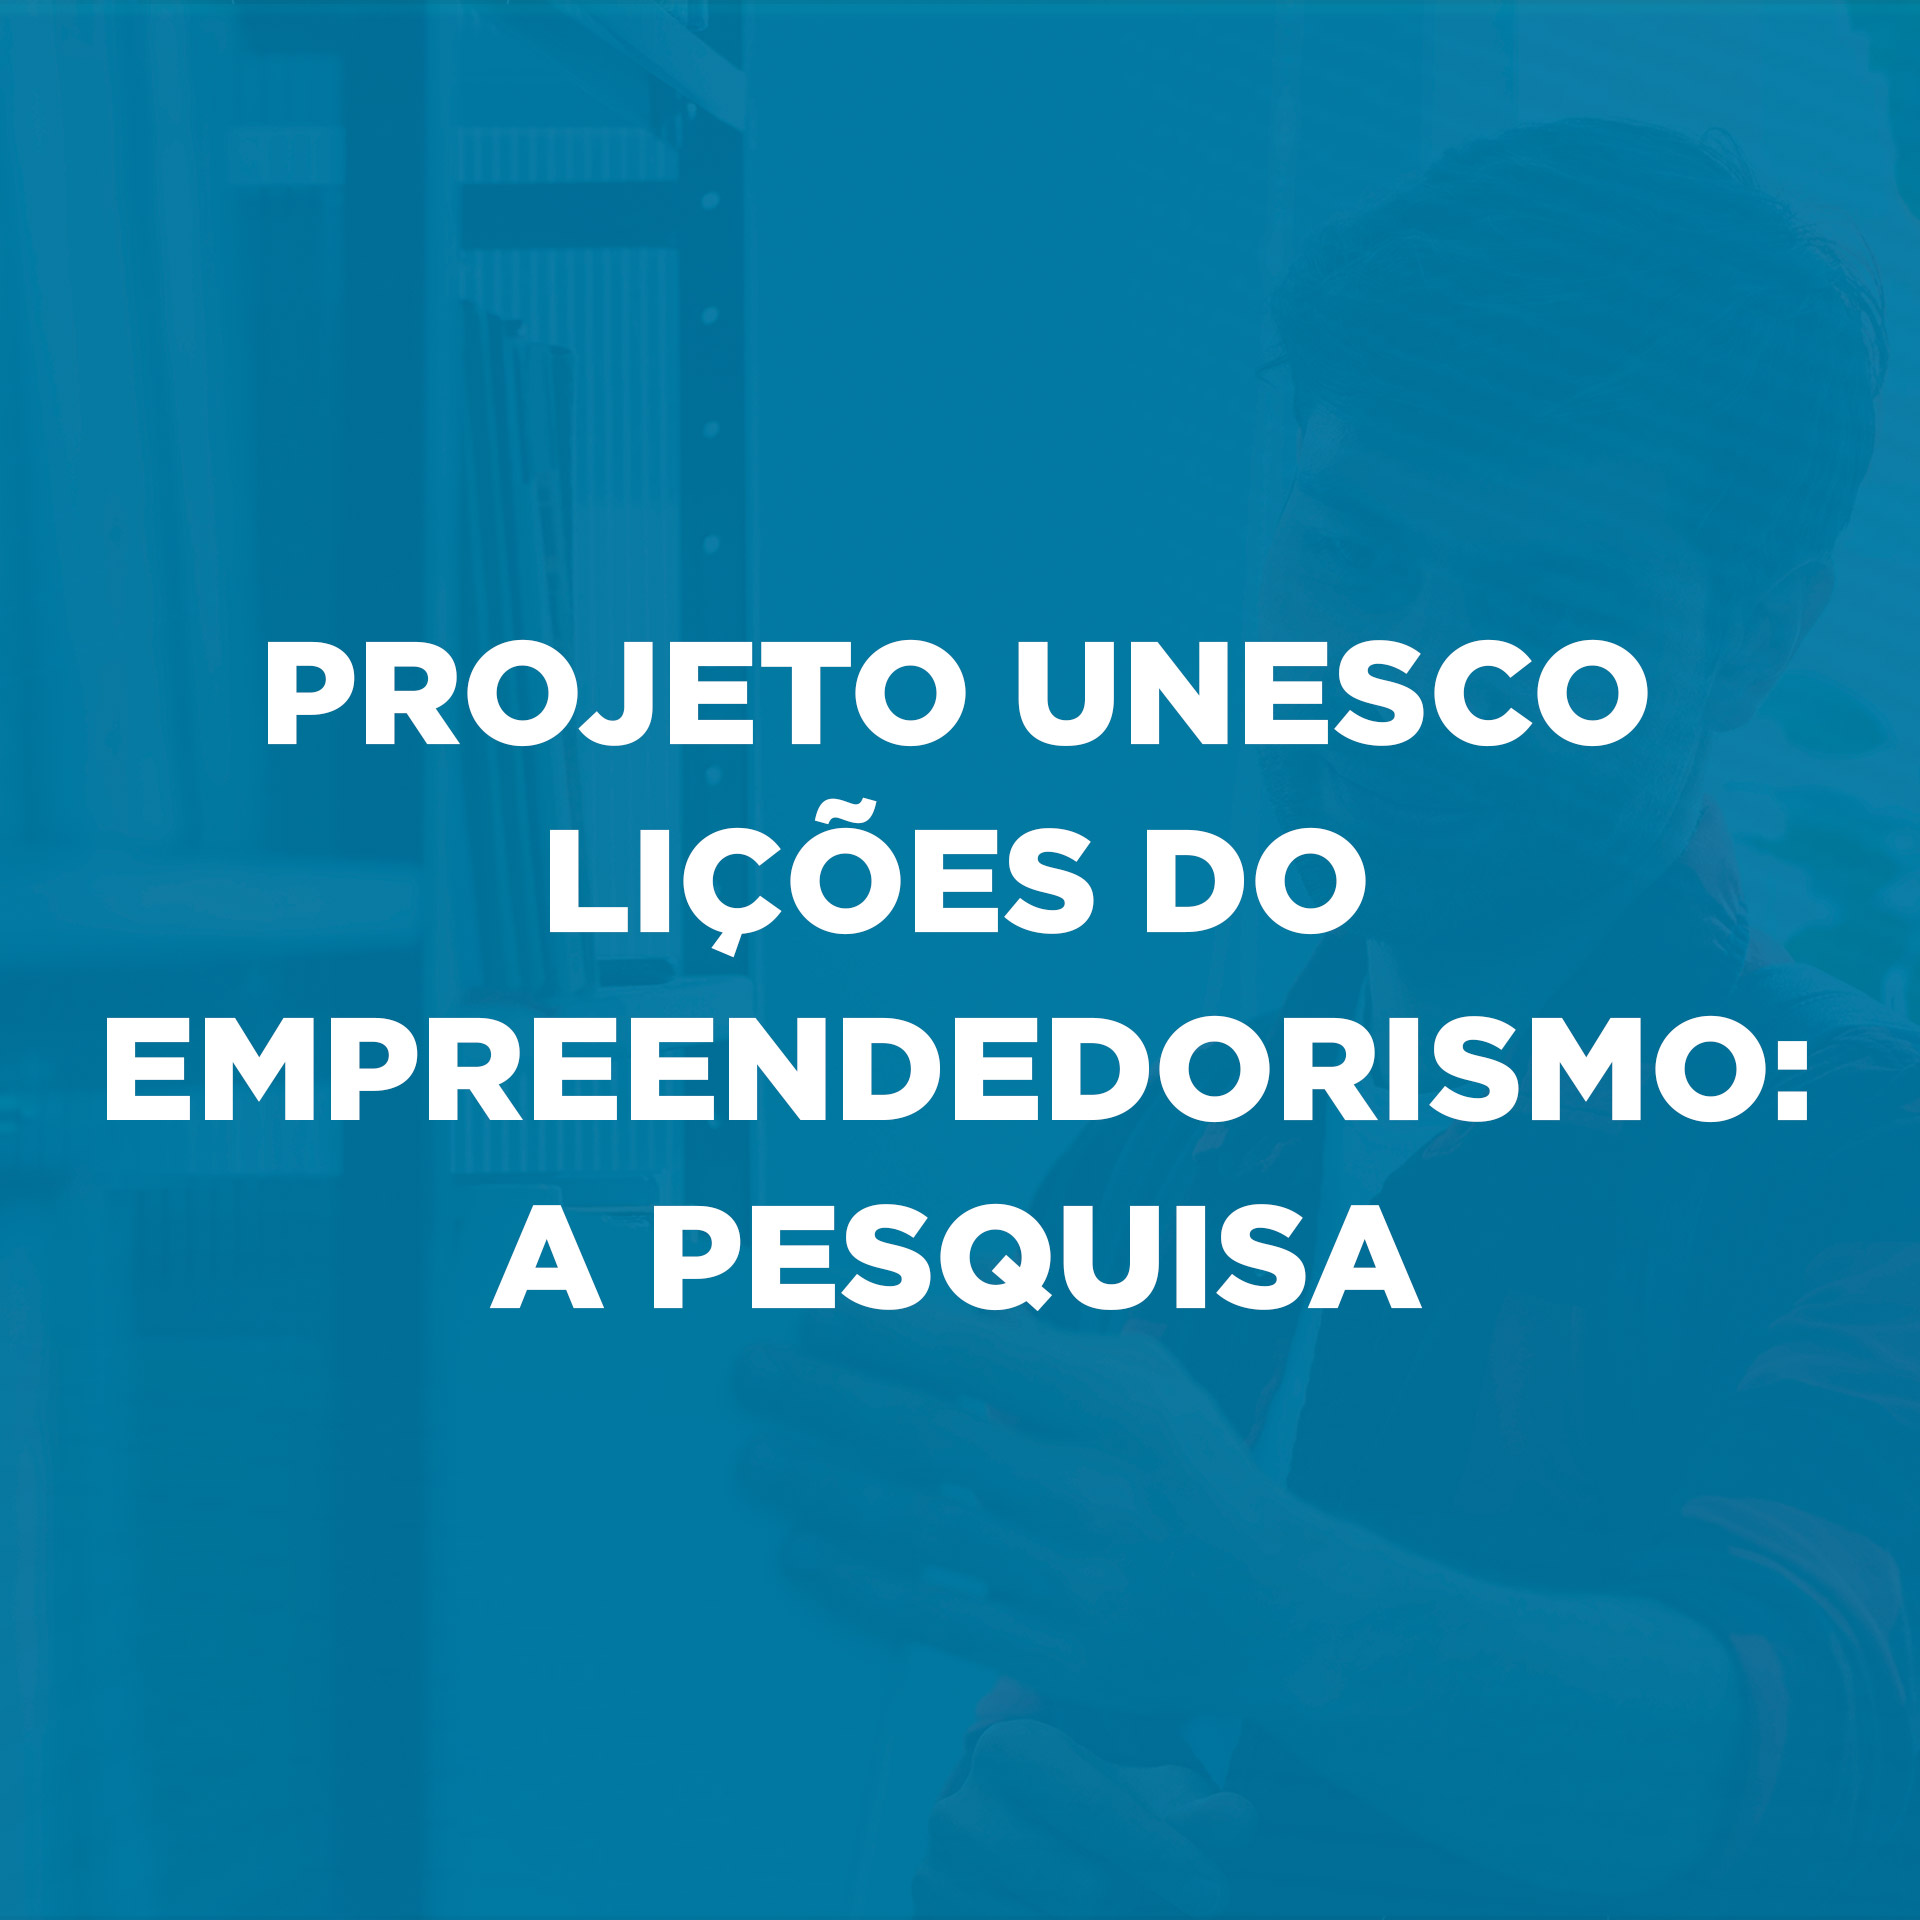 Projeto Unesco Lições do Empreendedorismo: A pesquisa